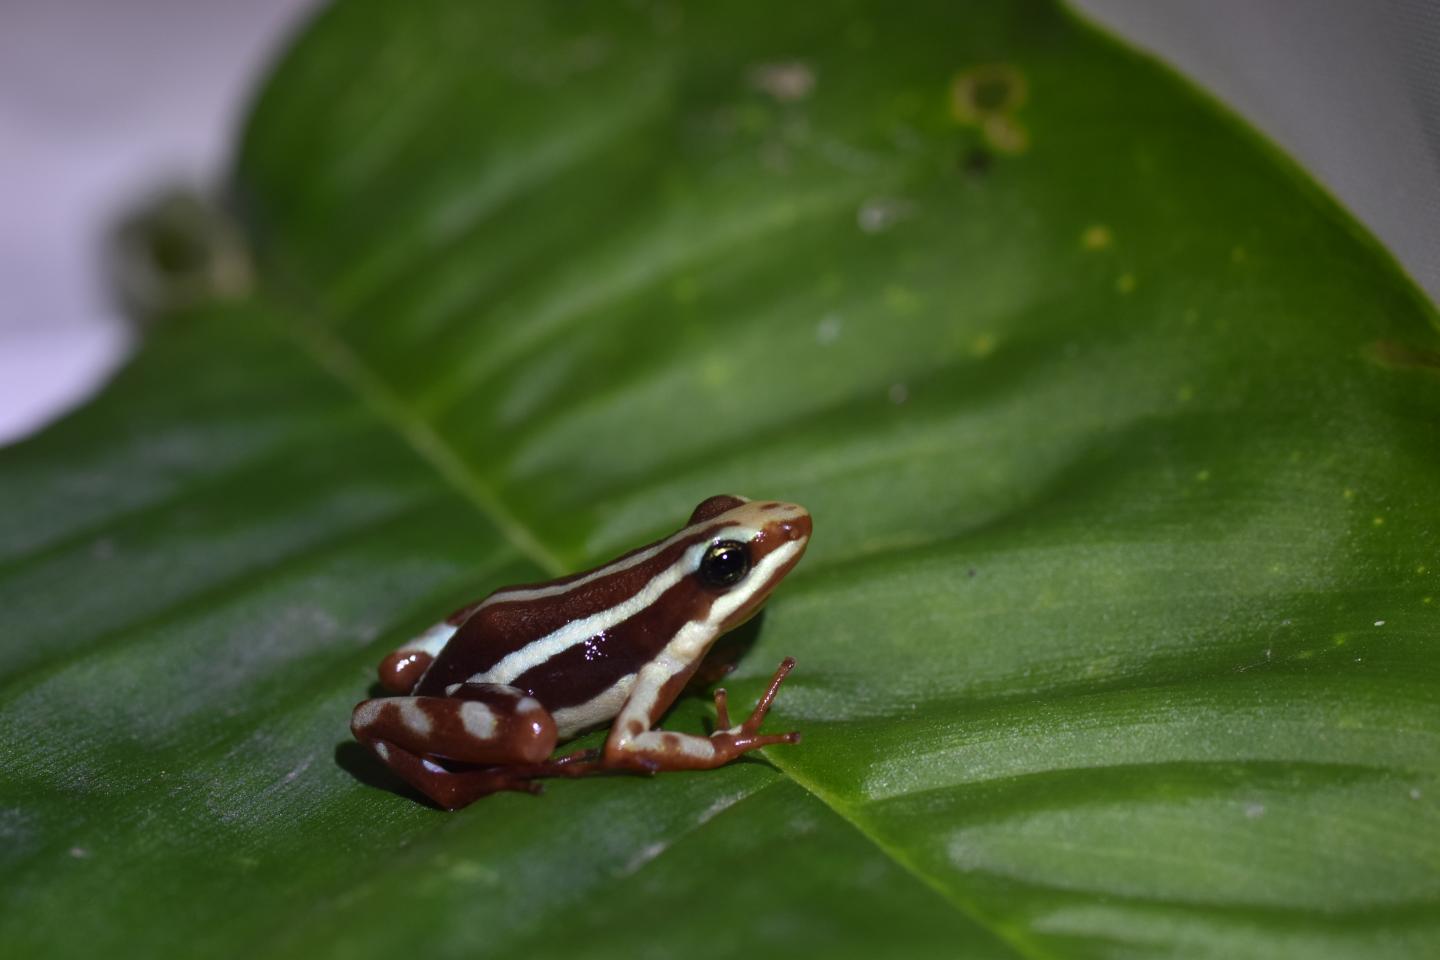 Poison Dart Frogs - Georgia Aquarium